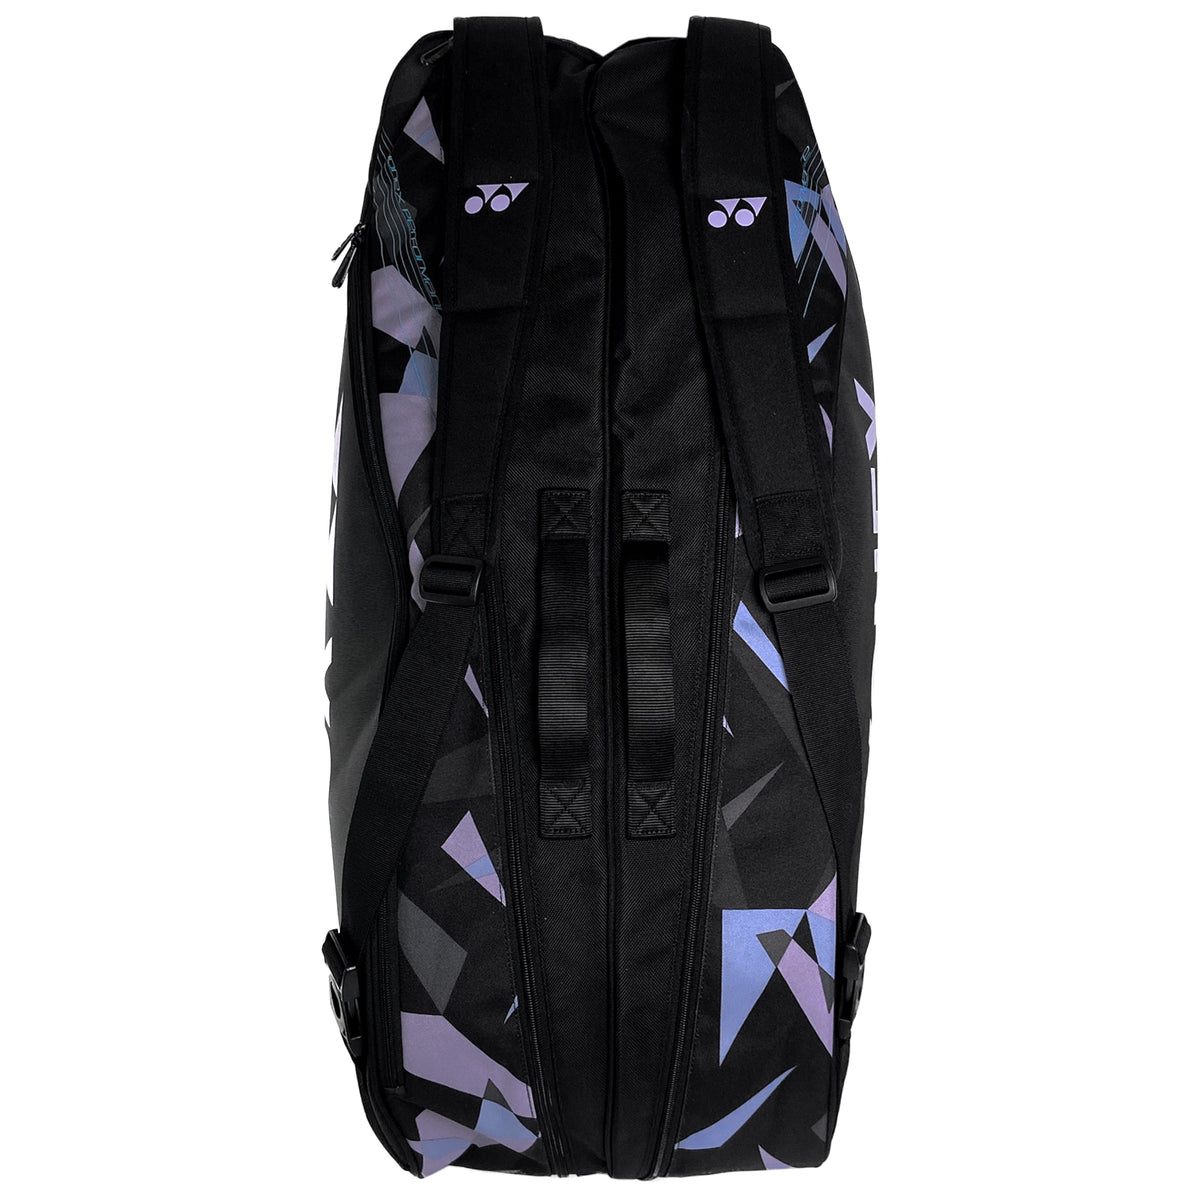 Yonex 92226 Pro sac de raquette de badminton - NF1000Z - noir